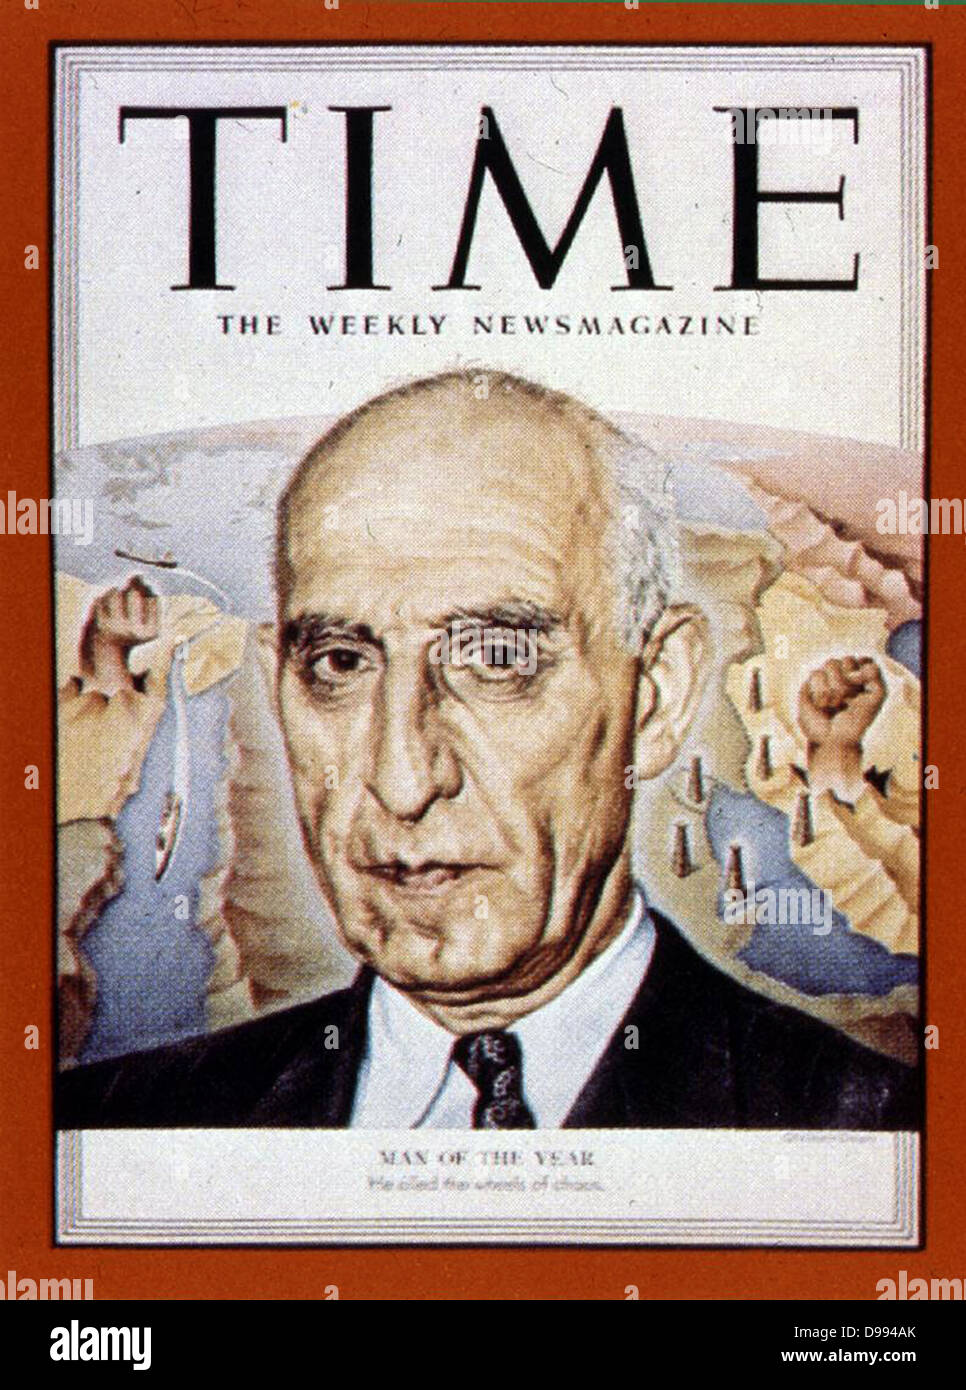 Mossadegh, 1951 Homme de l'année, de temps 1952. Mohammad Mosaddegh (19 mai 1882 - 5 mars 1967) Premier ministre de l'Iran de 1951 à 1953 quand il a été renversé par un coup d'état soutenu par l'Agence centrale de renseignements des États-Unis. Banque D'Images